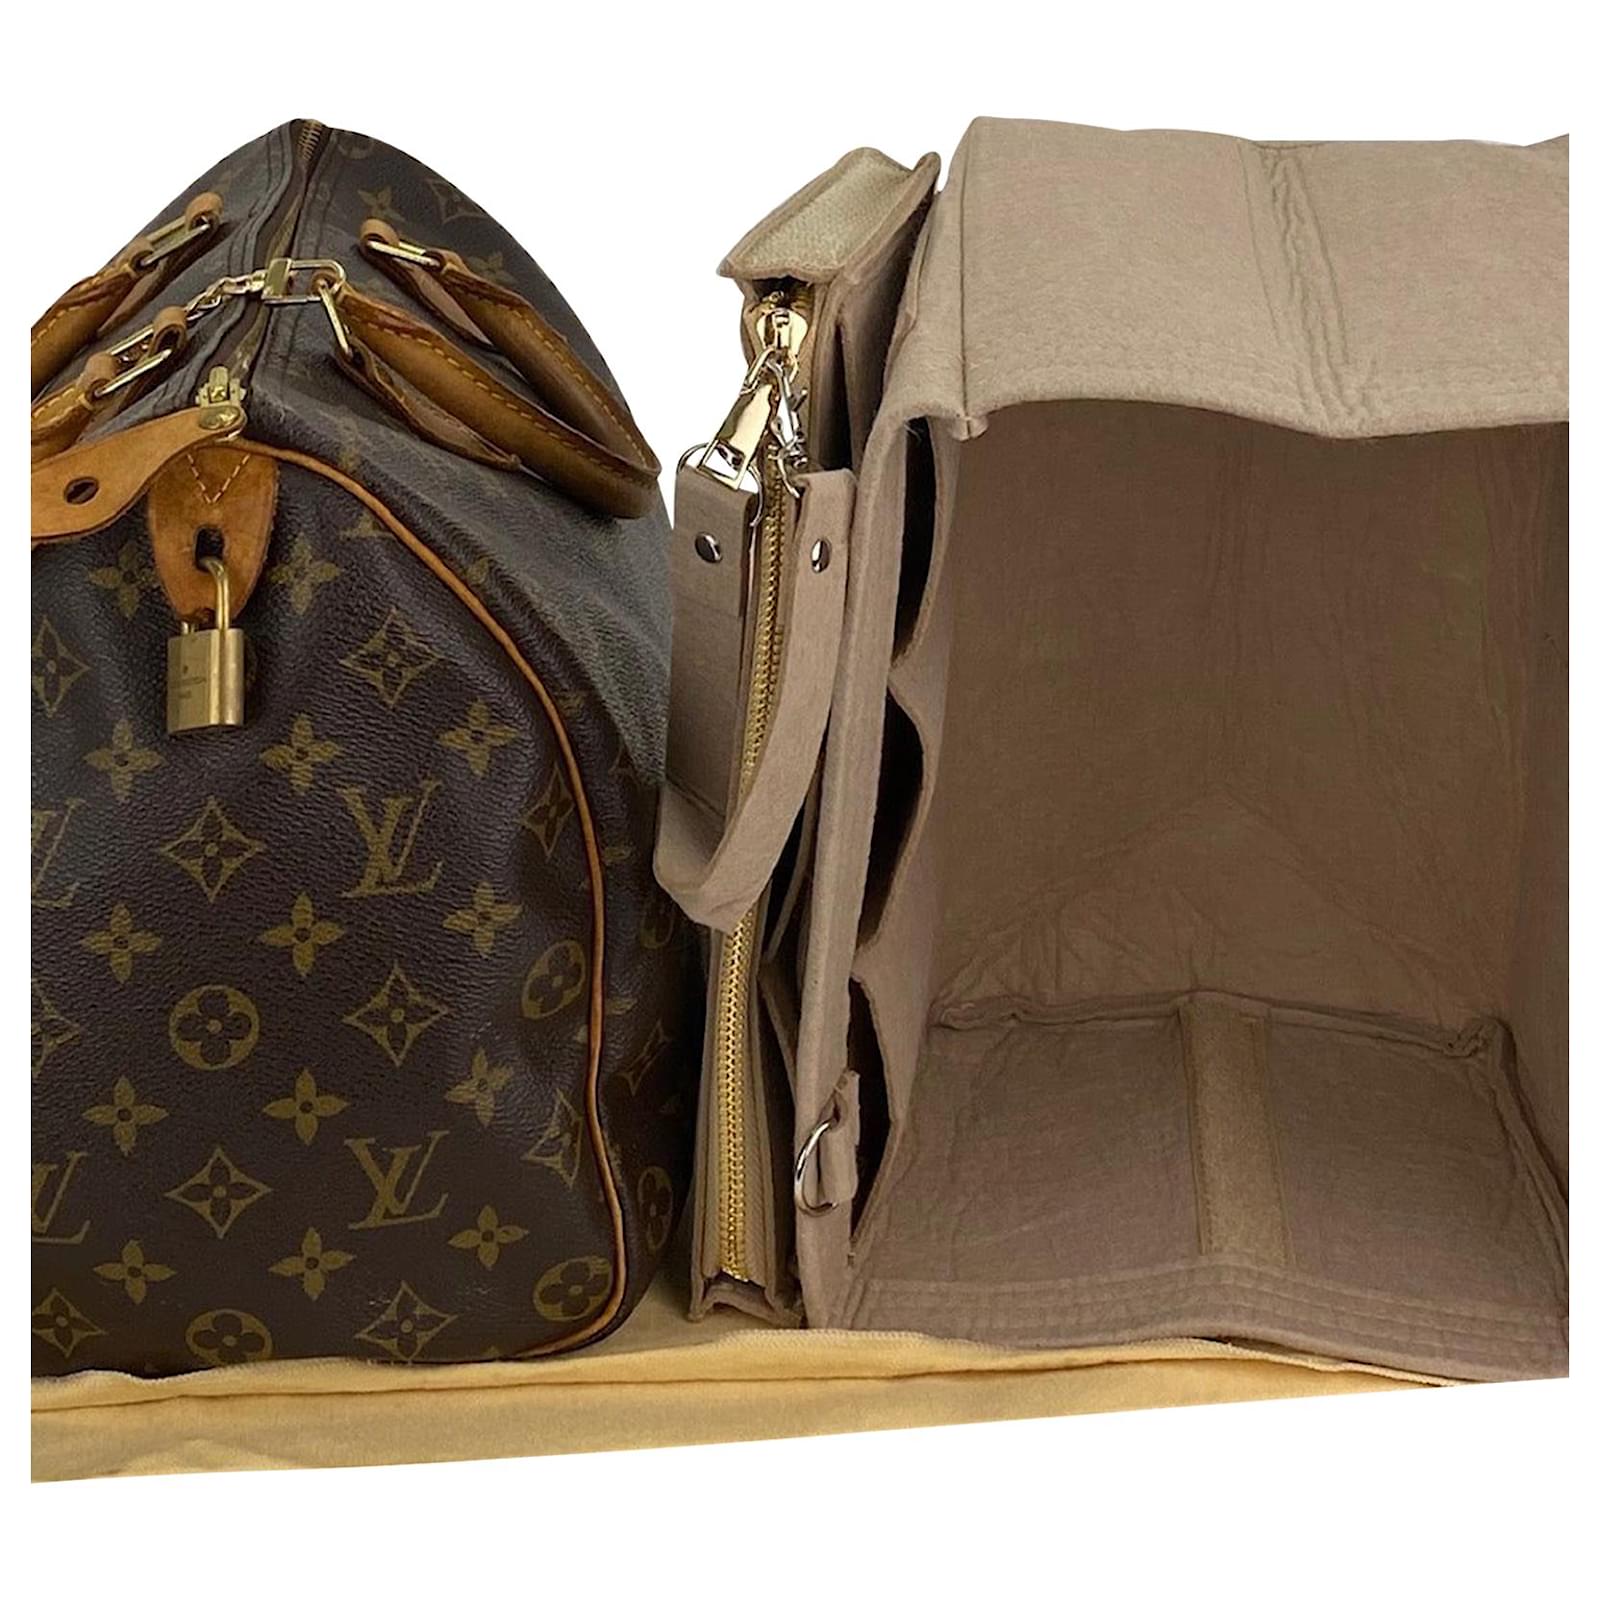 Louis Vuitton Monogram Canvas Speedy 35 Shoulder Bag Added Insert & Chain  A907